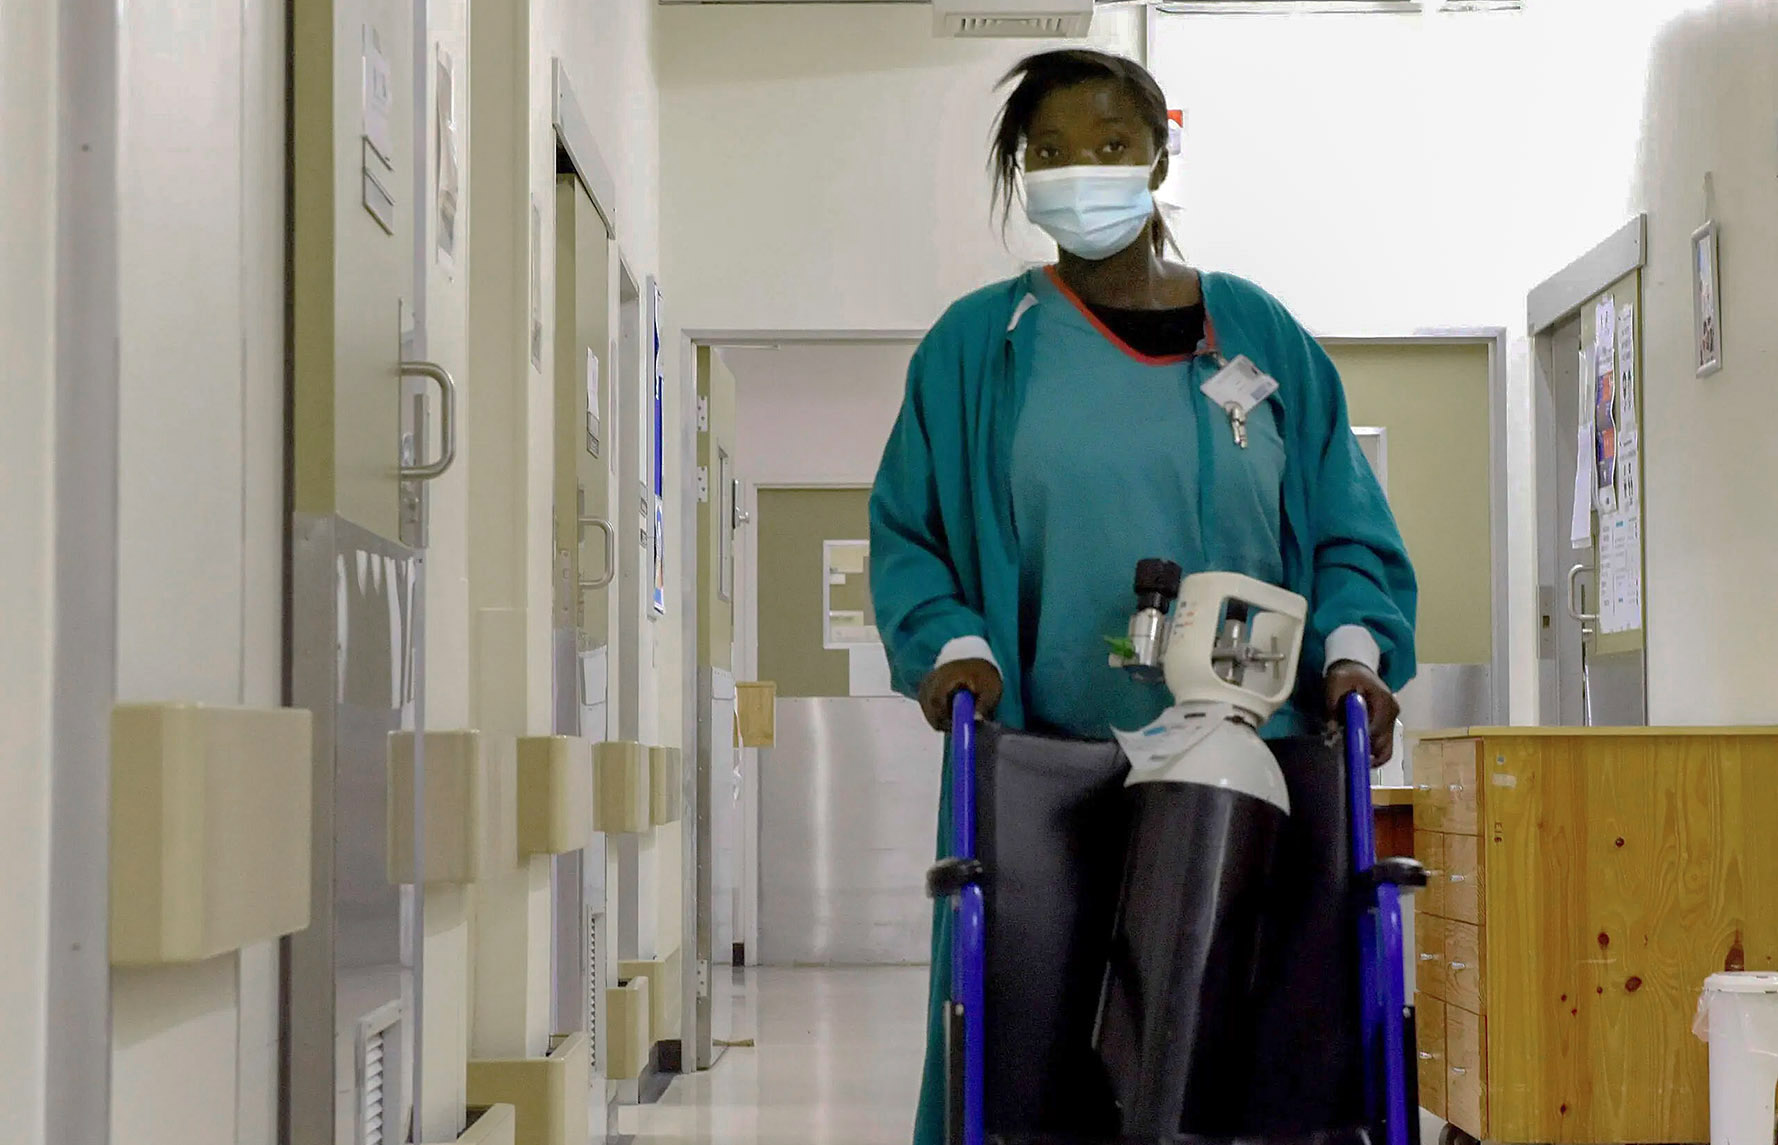 A nurse wheels an oxygen tank through a hospital hallway